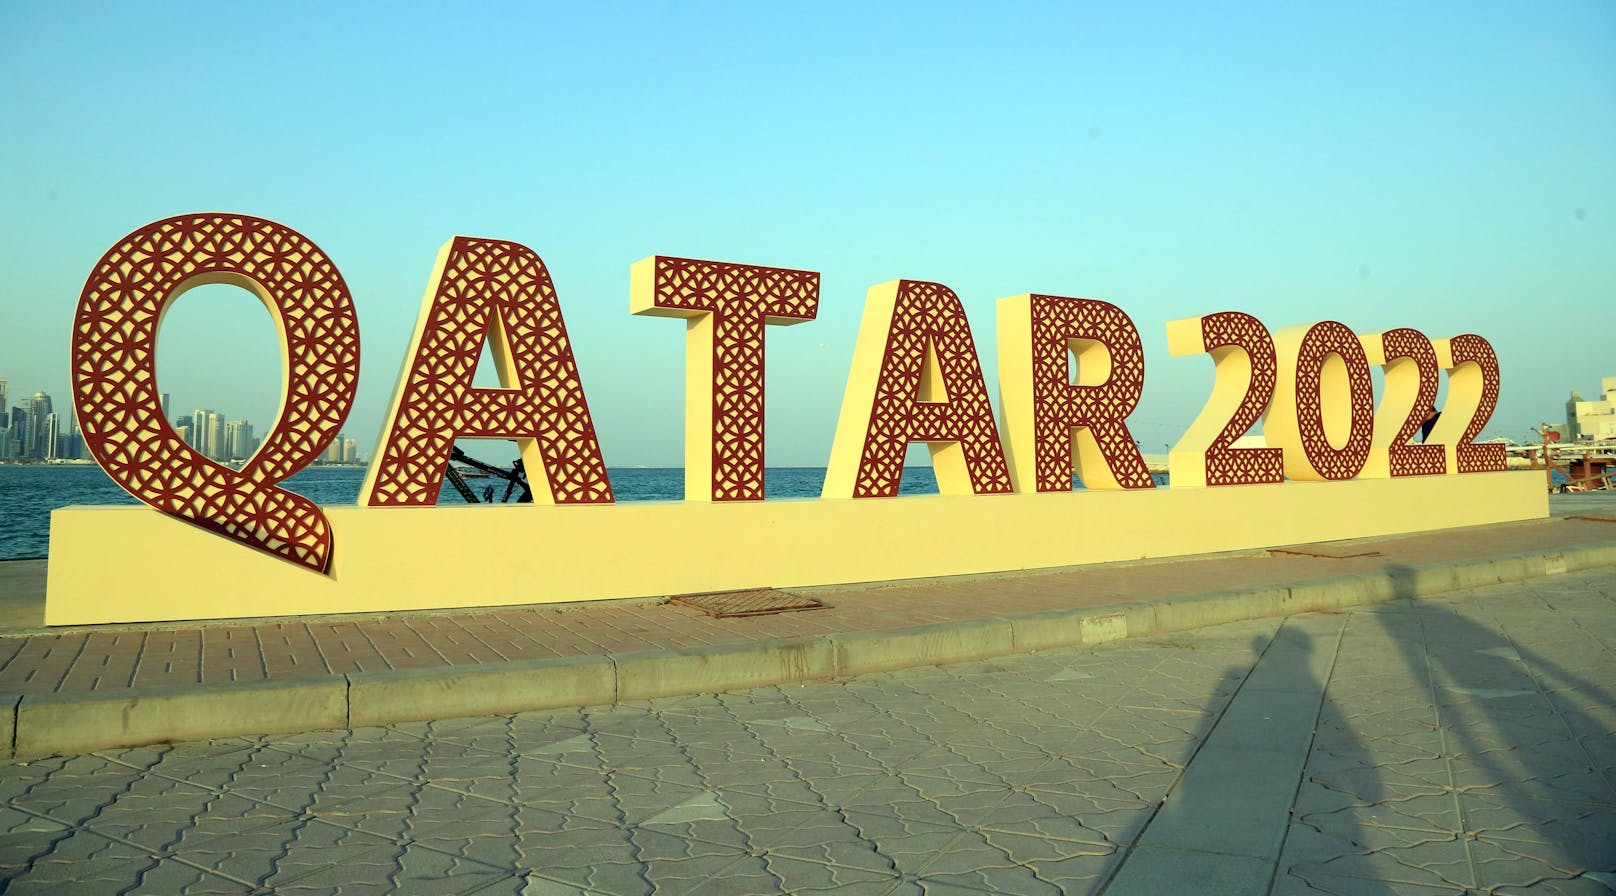 Am 20.11 beginnt die Weltmeisterschaft in Katar.